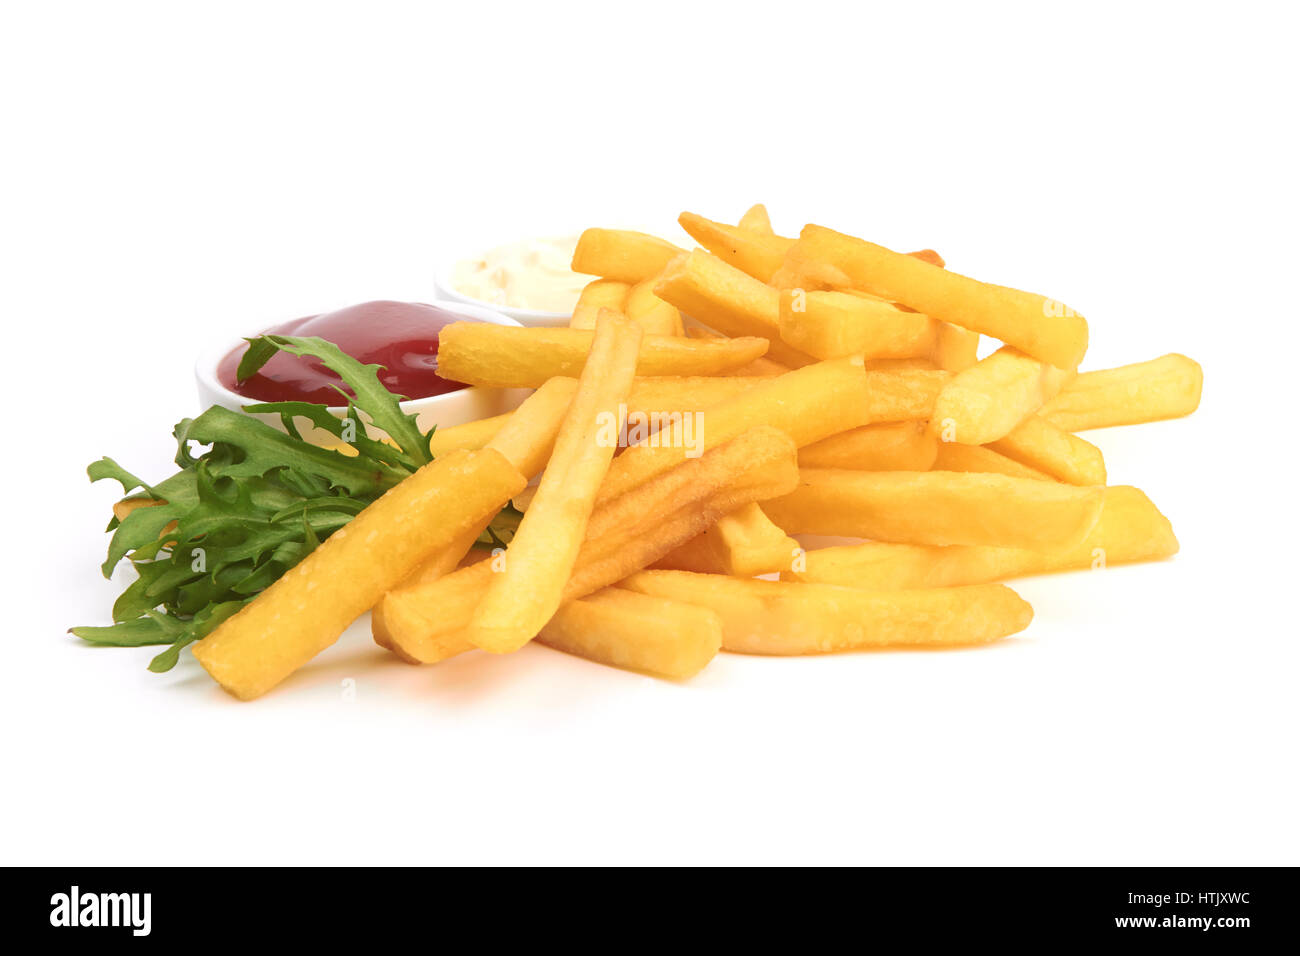 Les frites avec du ketchup libre over white Banque D'Images